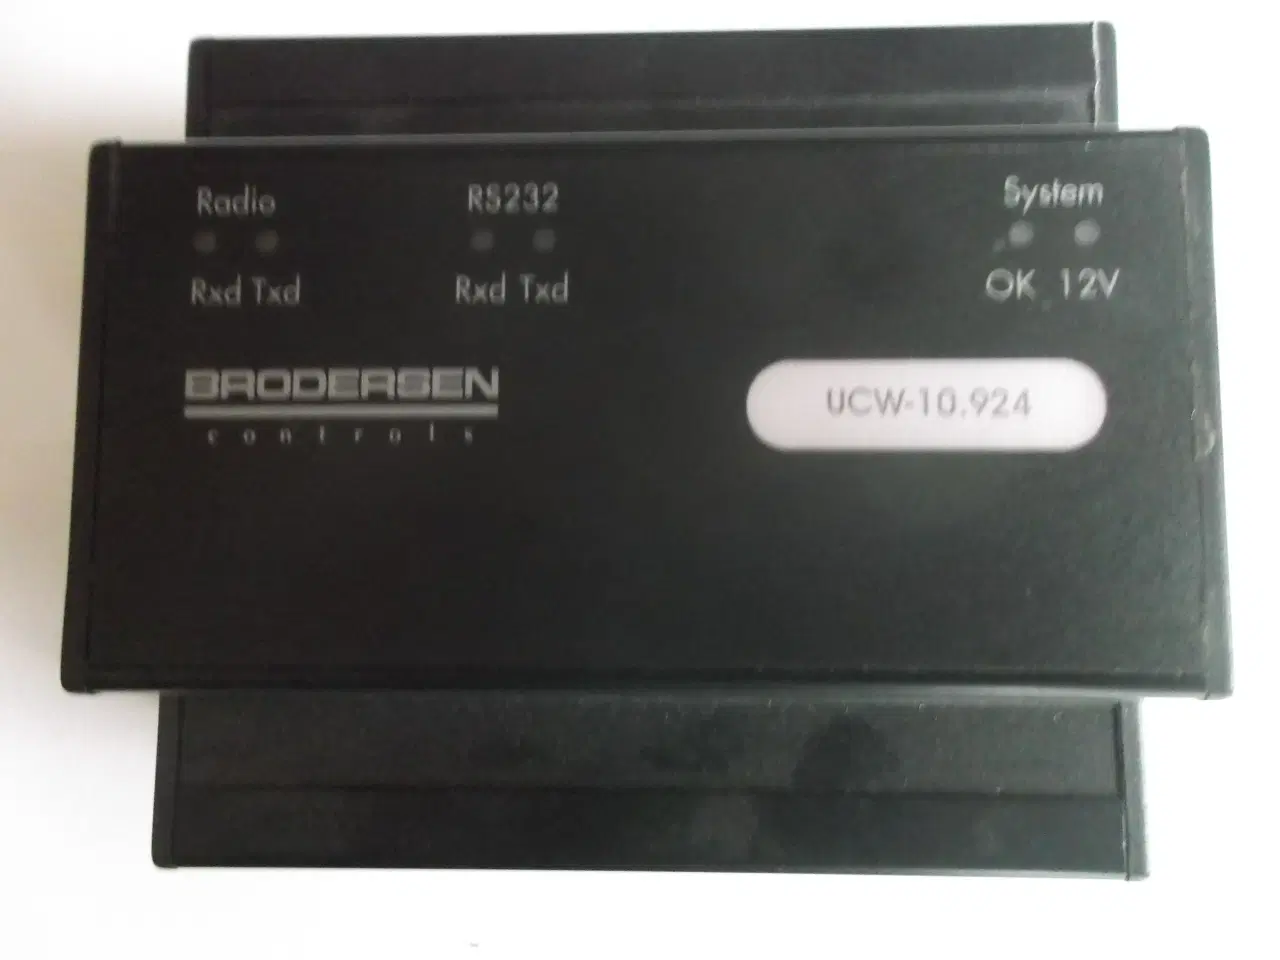 Billede 1 - Brodersen Controls radio modul UCW-10.924